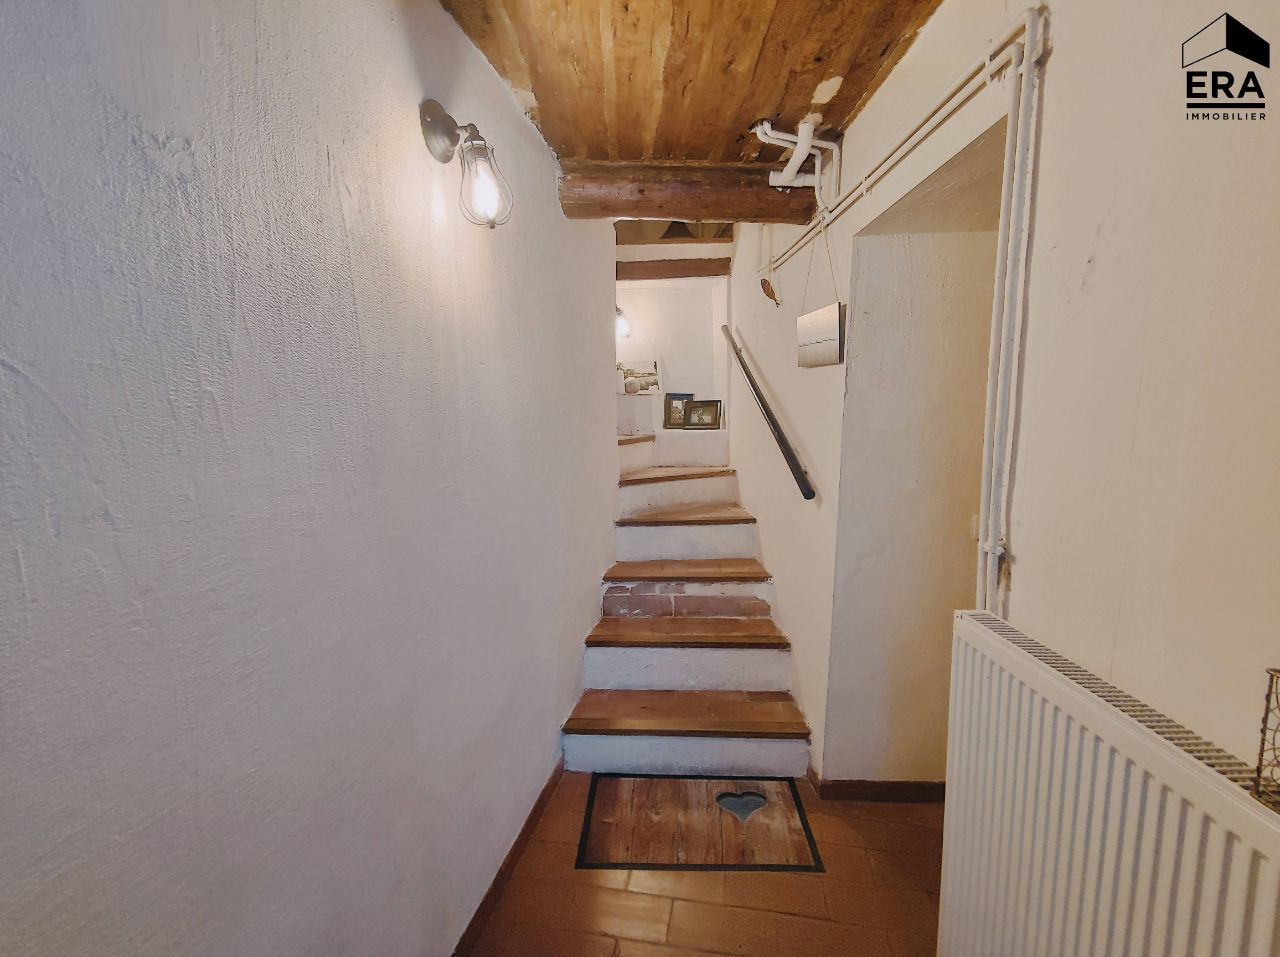 A VENDRE Maison de village Cadenet 3 pièces 95 m² environ et studio indépendant